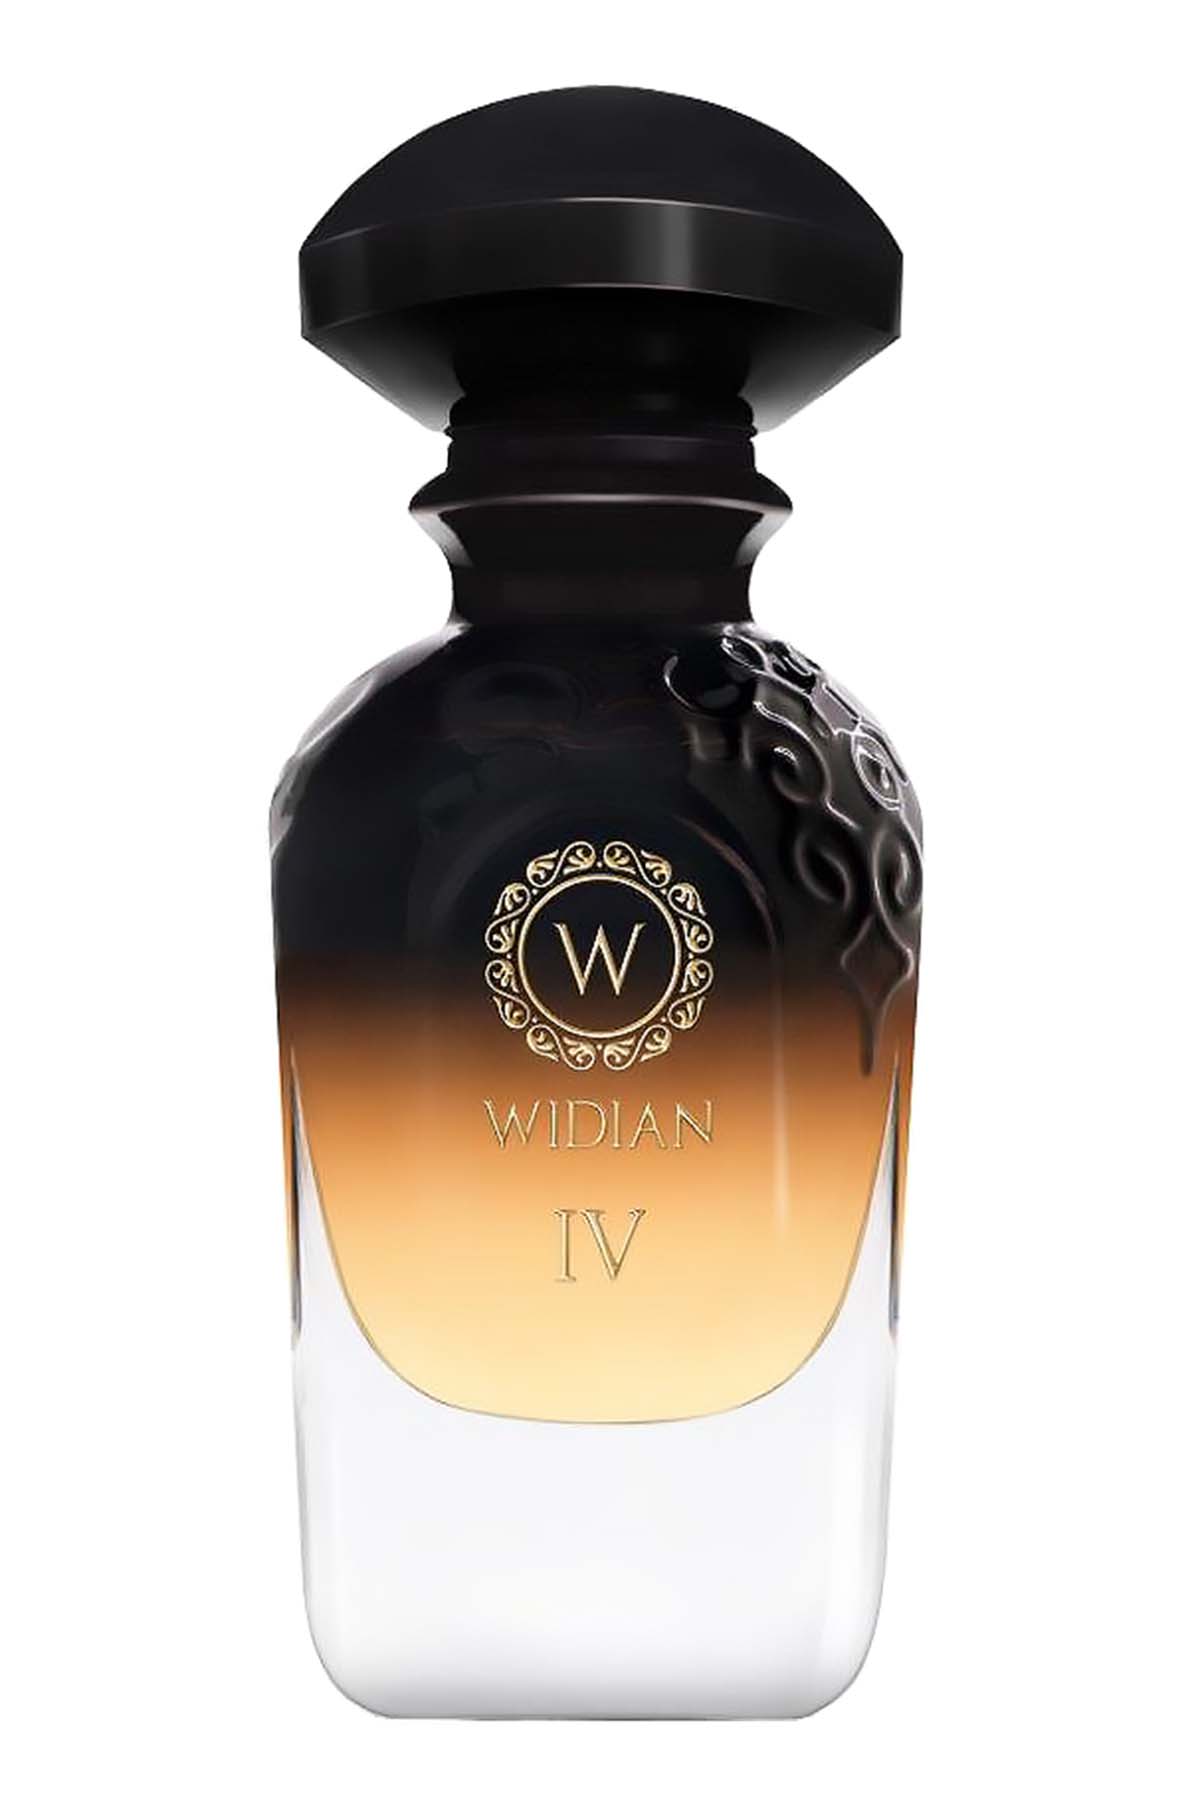 Widian Black IV Extrait de Parfum